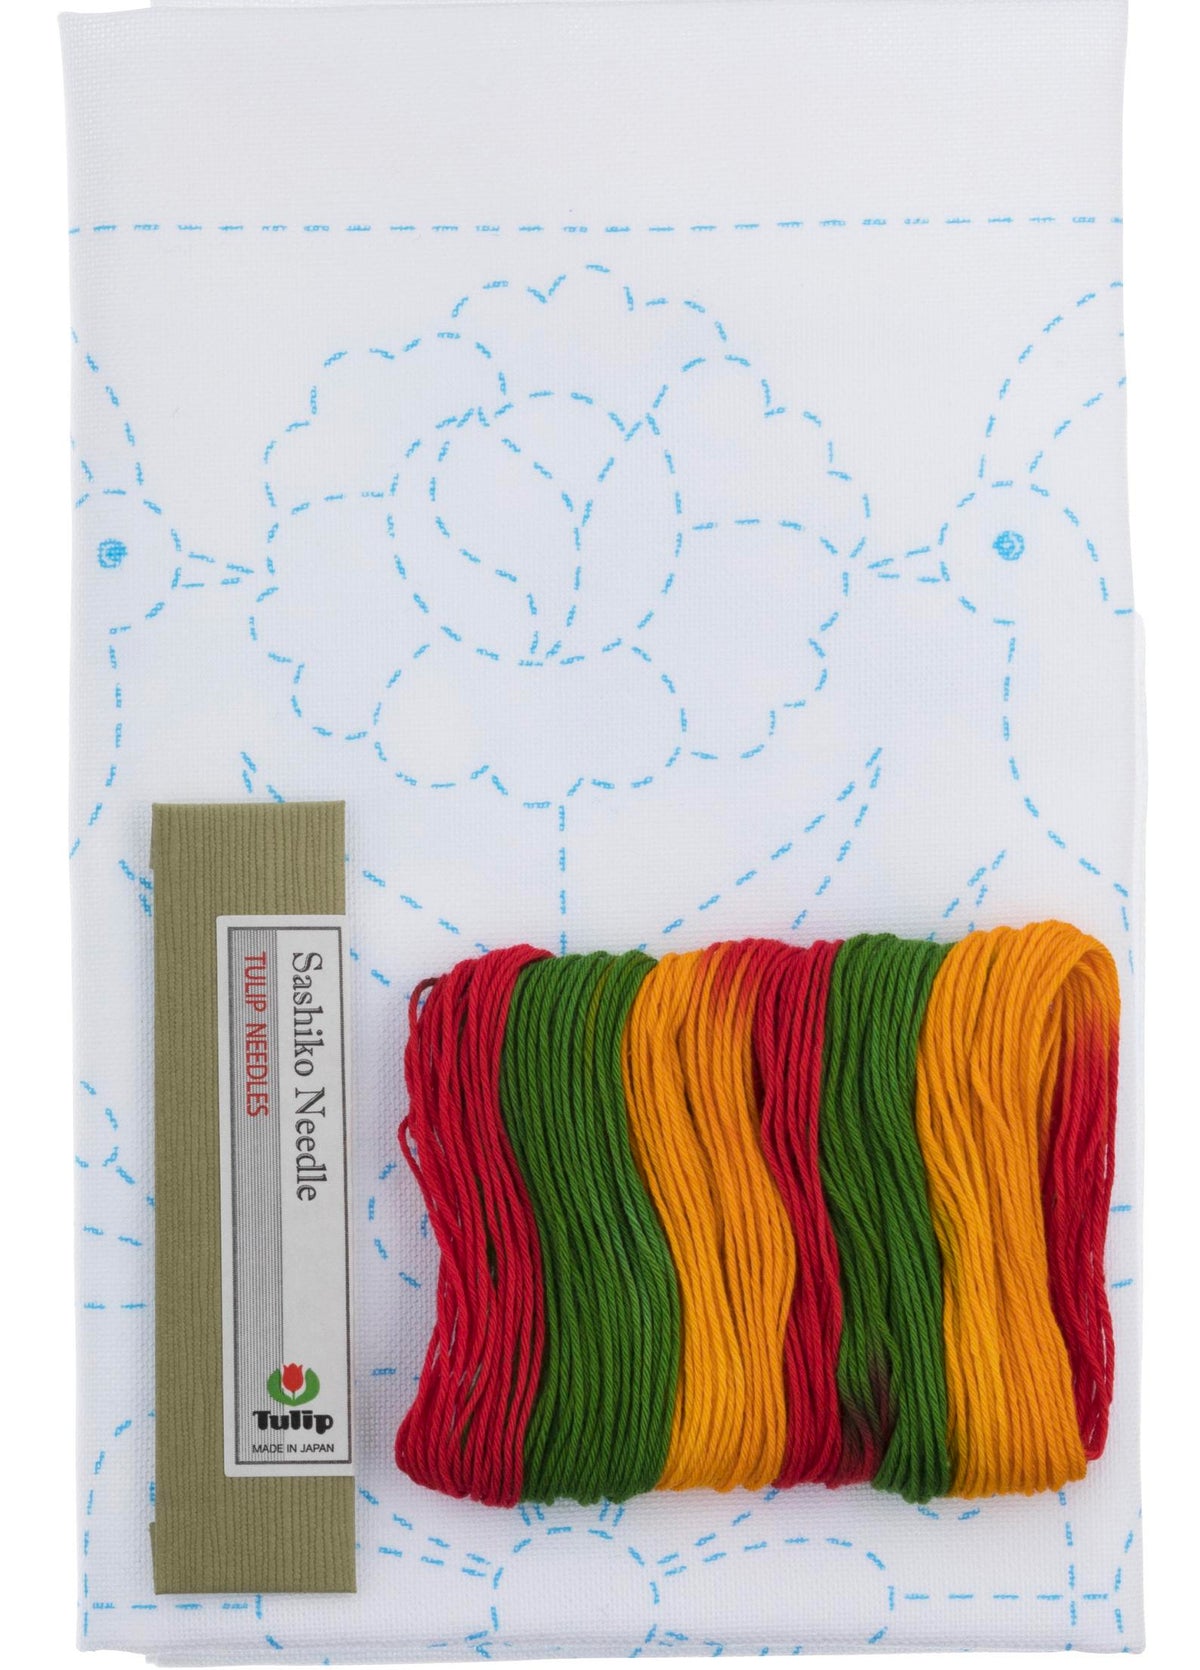 Sashiko World Embroidery Kit - Mexico Quetzal